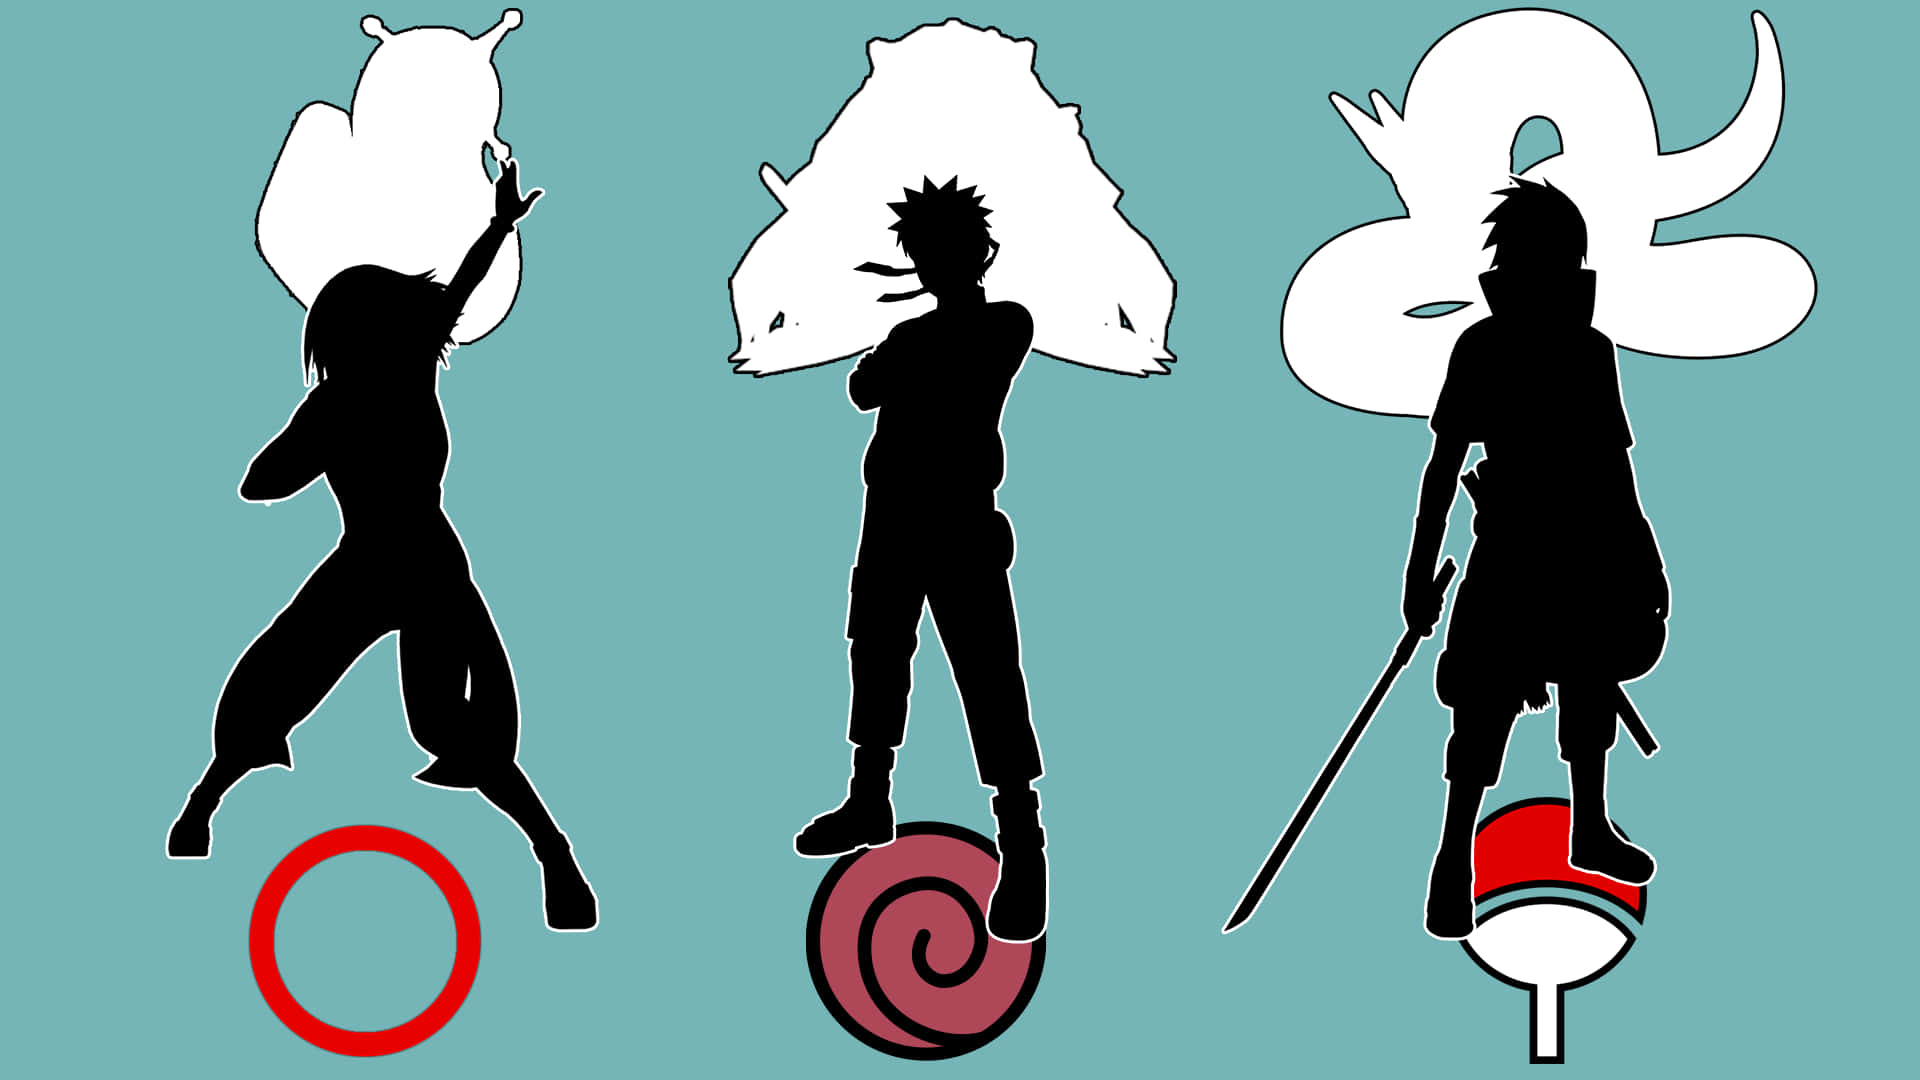 Narutoteam 7 Macht Sich Auf Ihre Reise. Wallpaper